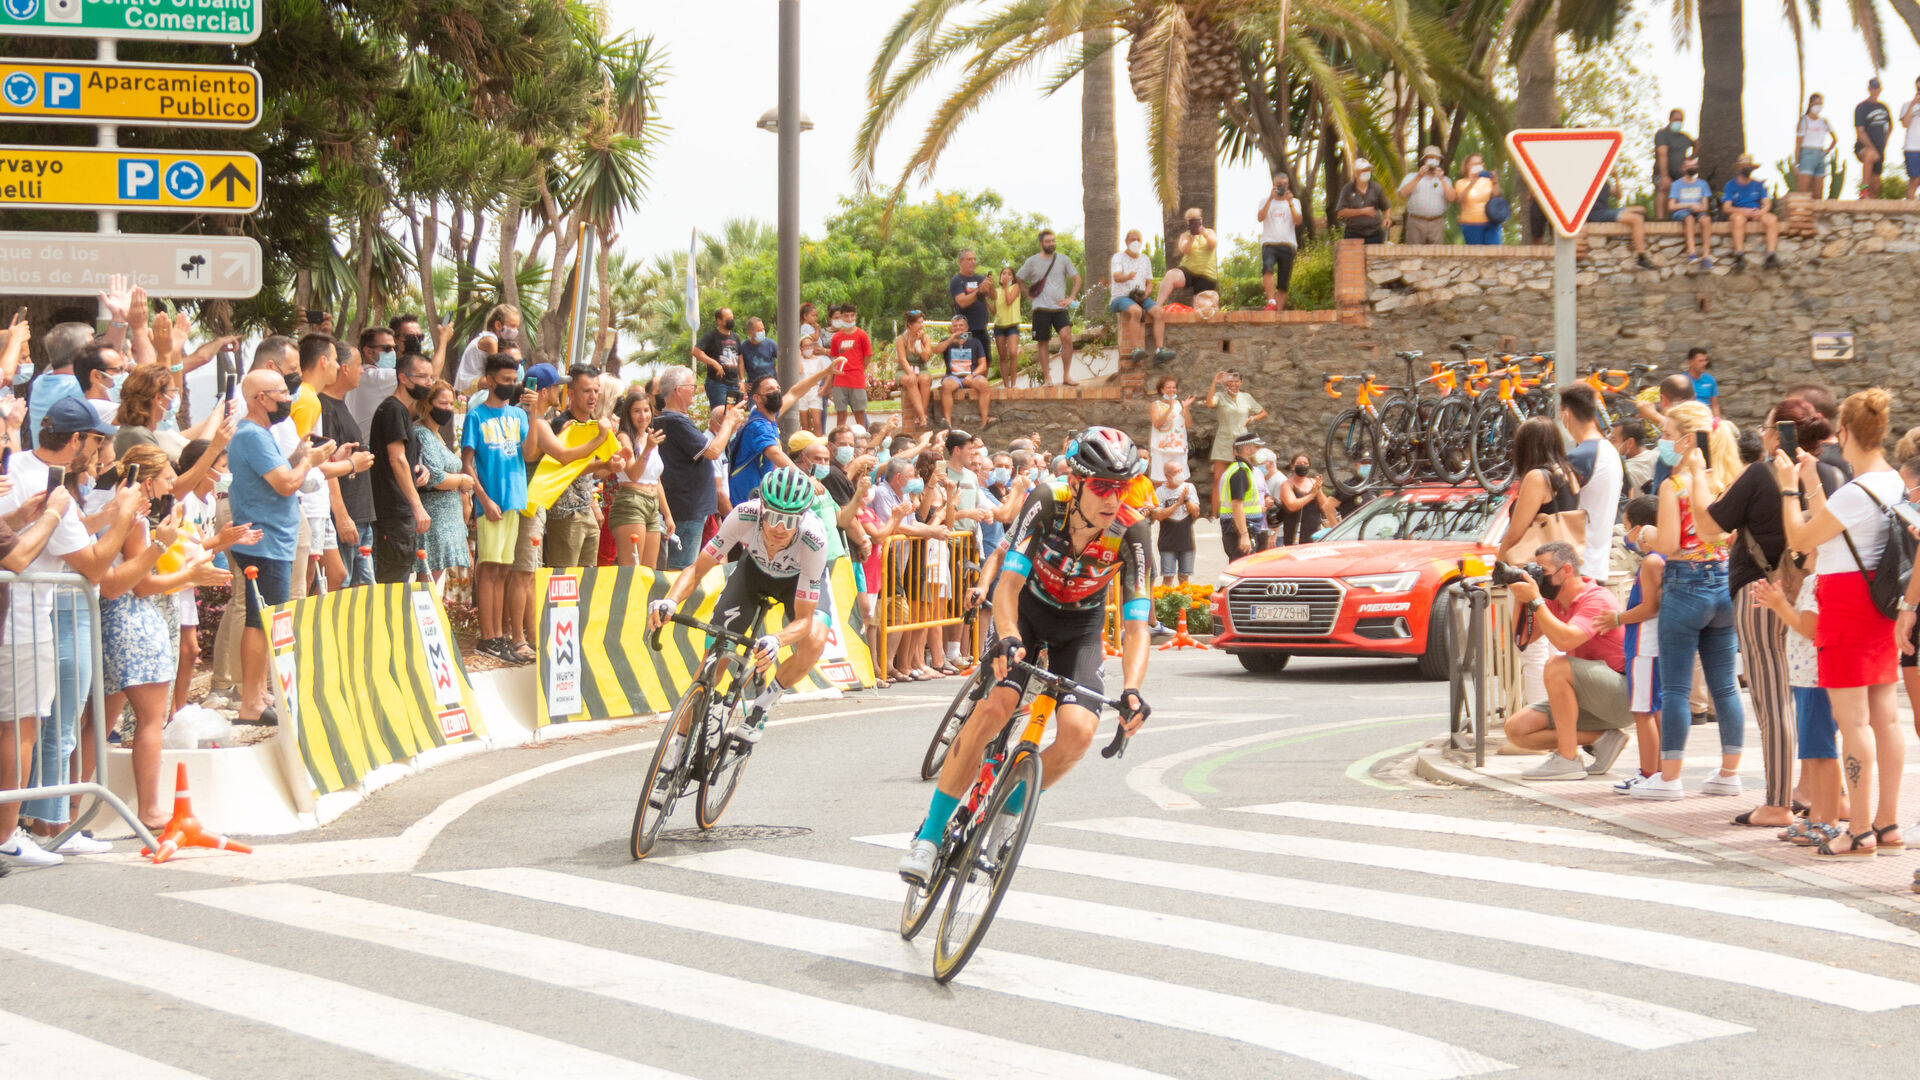 Gran ambiente en la costa granadina con el paso de la Vuelta Ciclista a Espa&ntilde;a